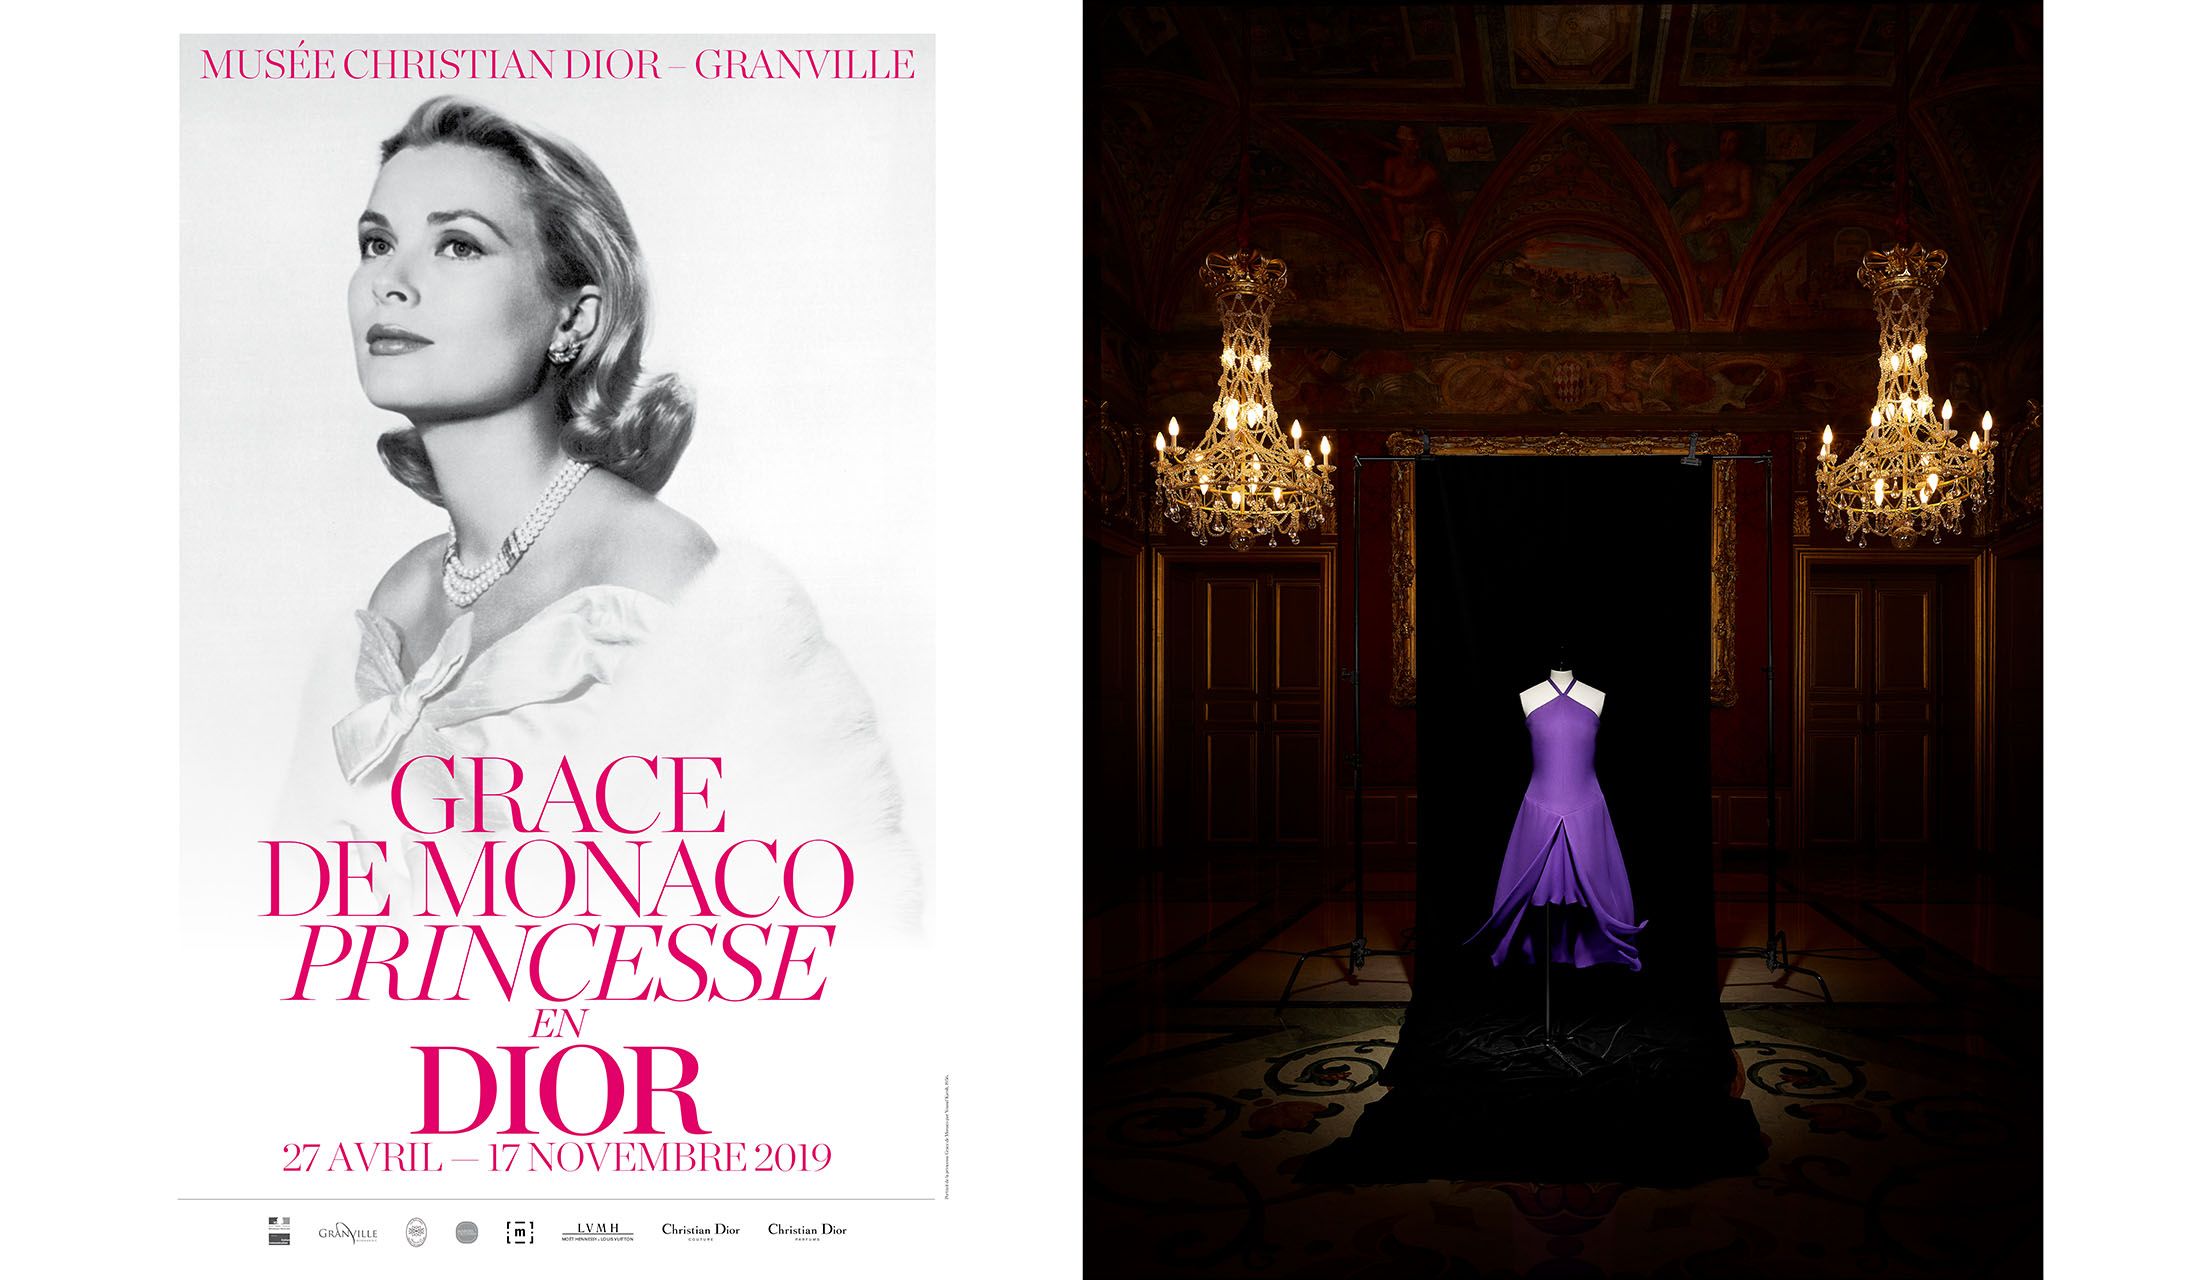 グレース ド モナコ ディオールをまとったプリンセス 展 グレース ケリーのエレガントなスタイルが観られる展覧会がパリで開催 19年11月17日まで Precious Jp プレシャス